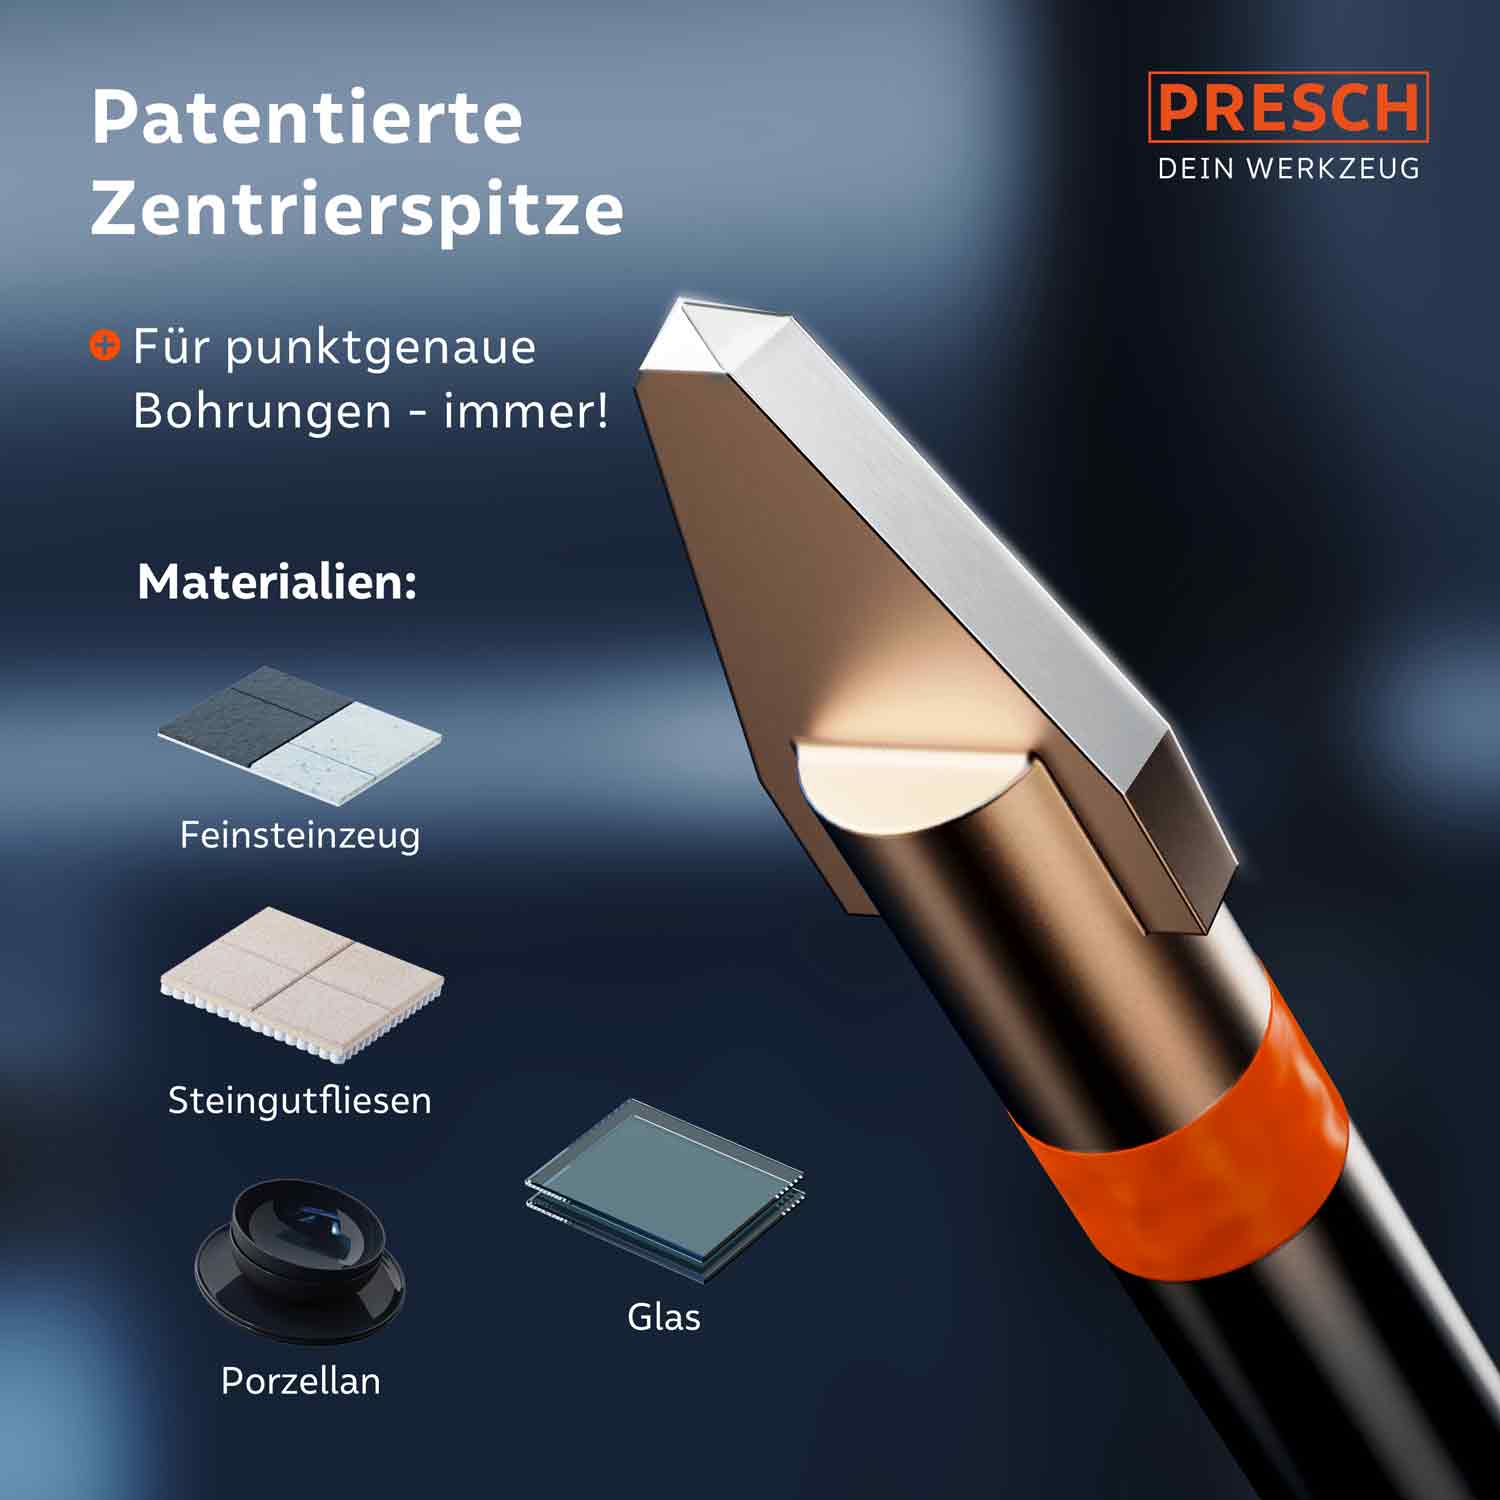 PRESCH Fliesenbohrer für Feinsteinzeug mit patentierter Zentrierspitze und Anwendungsbeispielen für Steinzeugfliesen und Glasbohrungen.